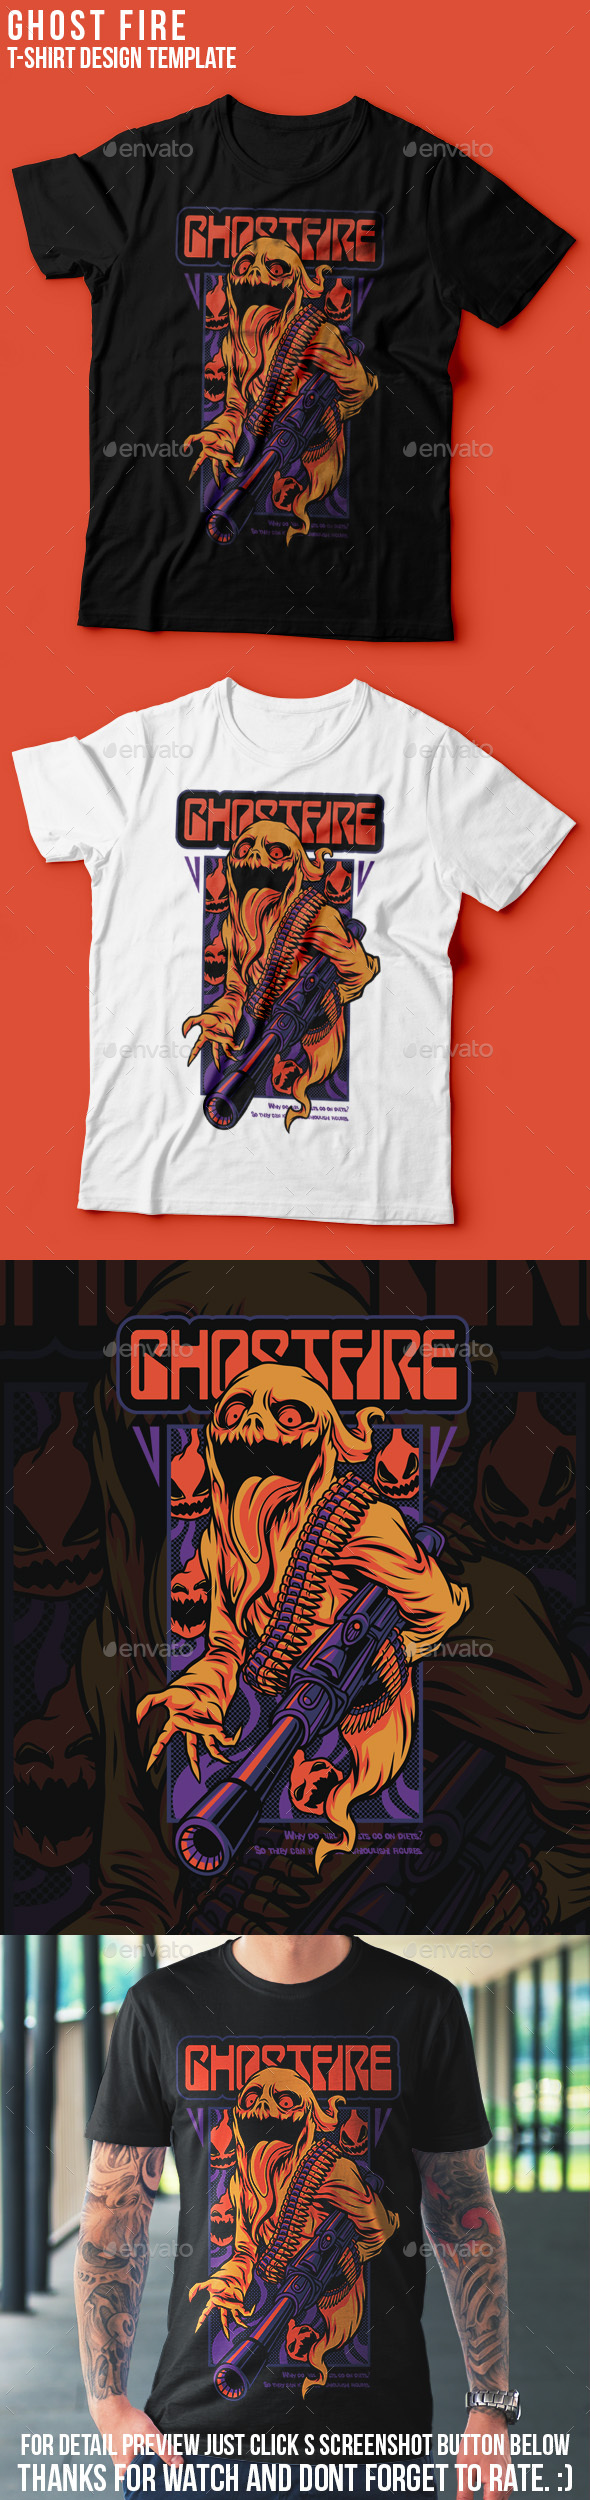 [DOWNLOAD]Ghost Fire Halloween T-Shirt Design